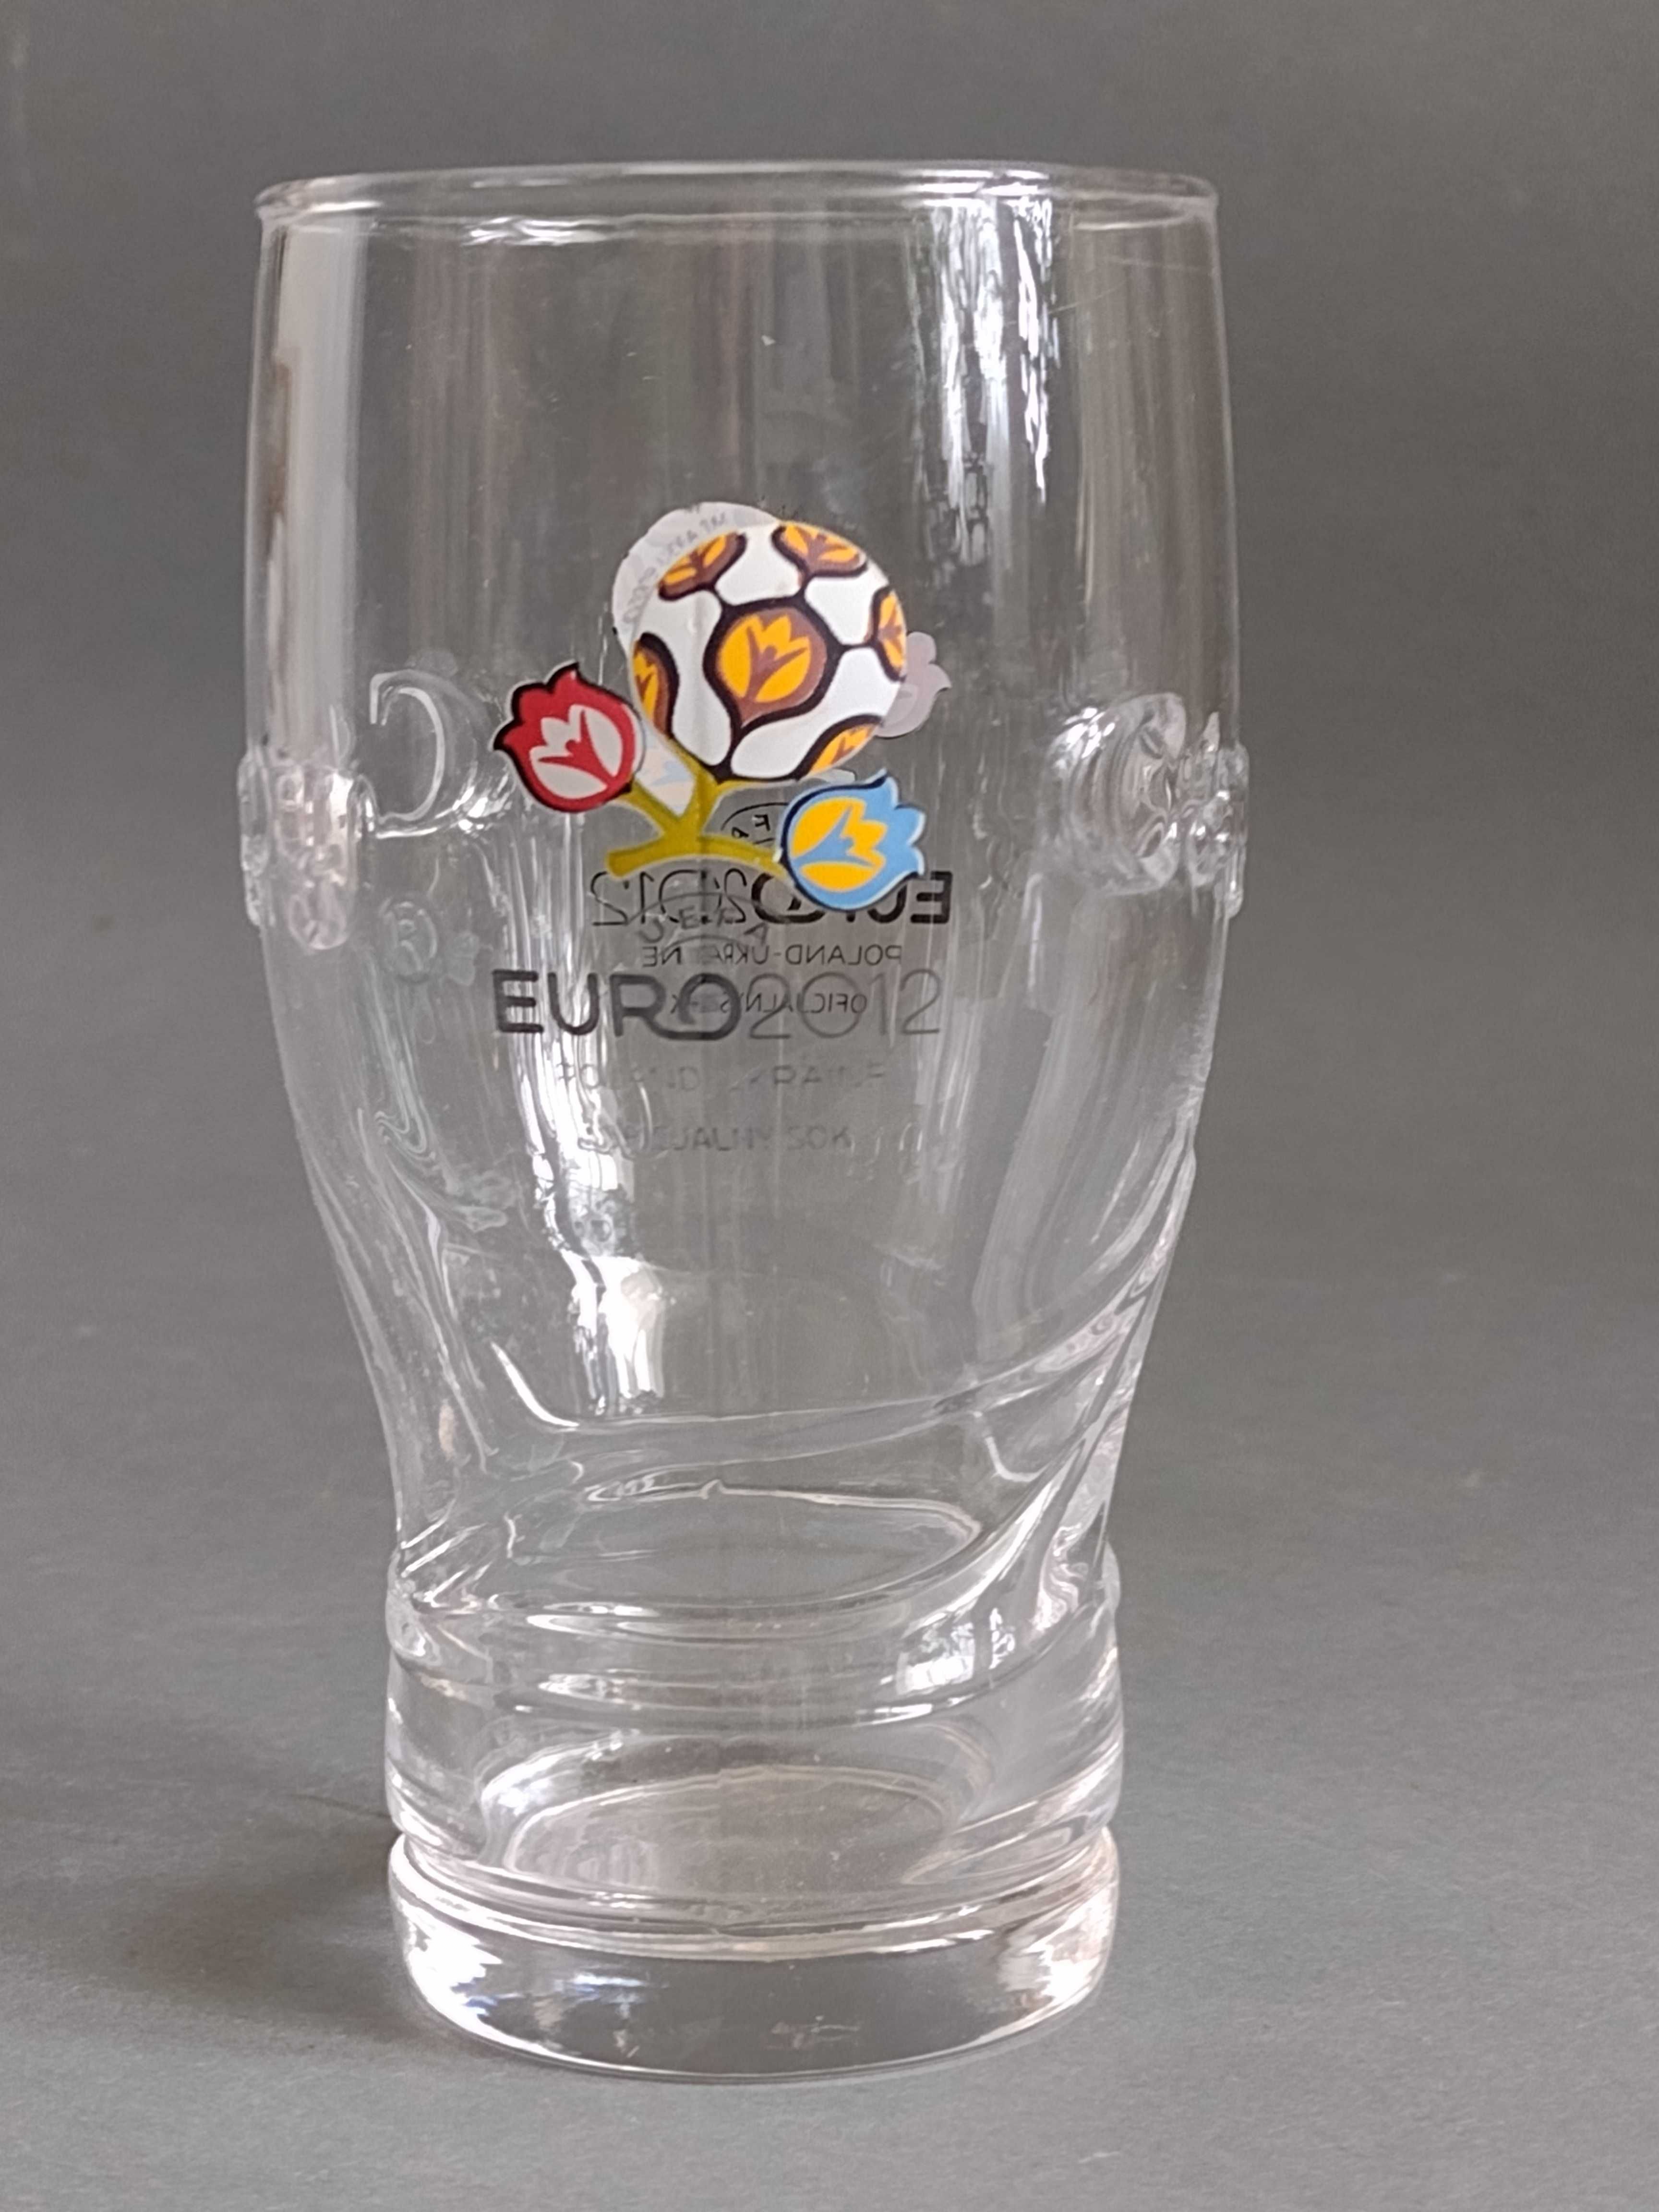 CAPPY- Szklanka Kolekcjonerska Euro 2012